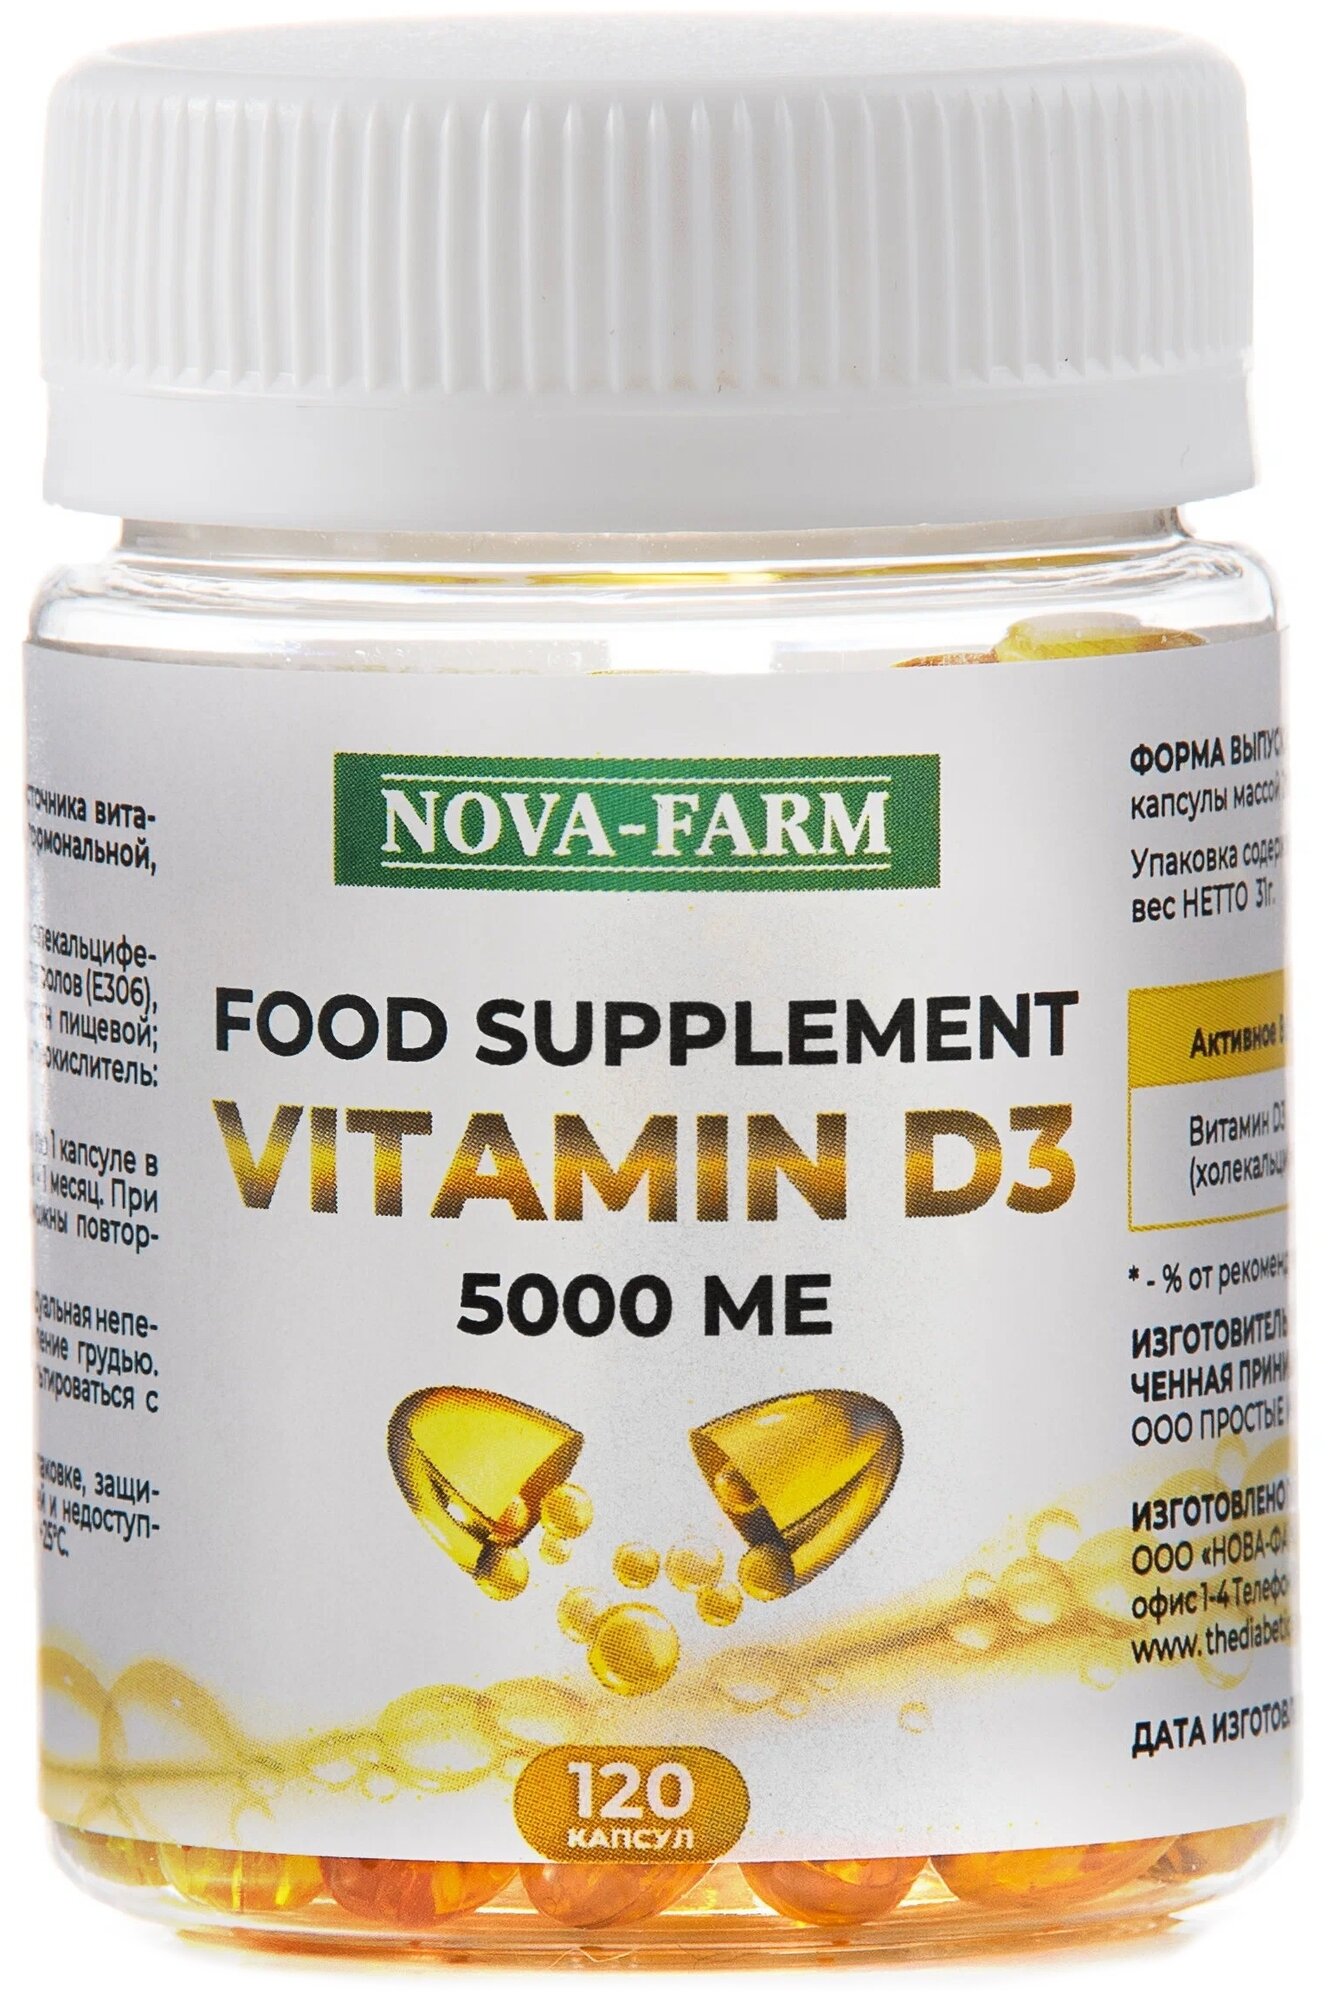 Витамин Д3 VITAMIN D3 Nova-Farm для иммунитета ( 5000 МЕ в 1 капсуле) 120 капсул